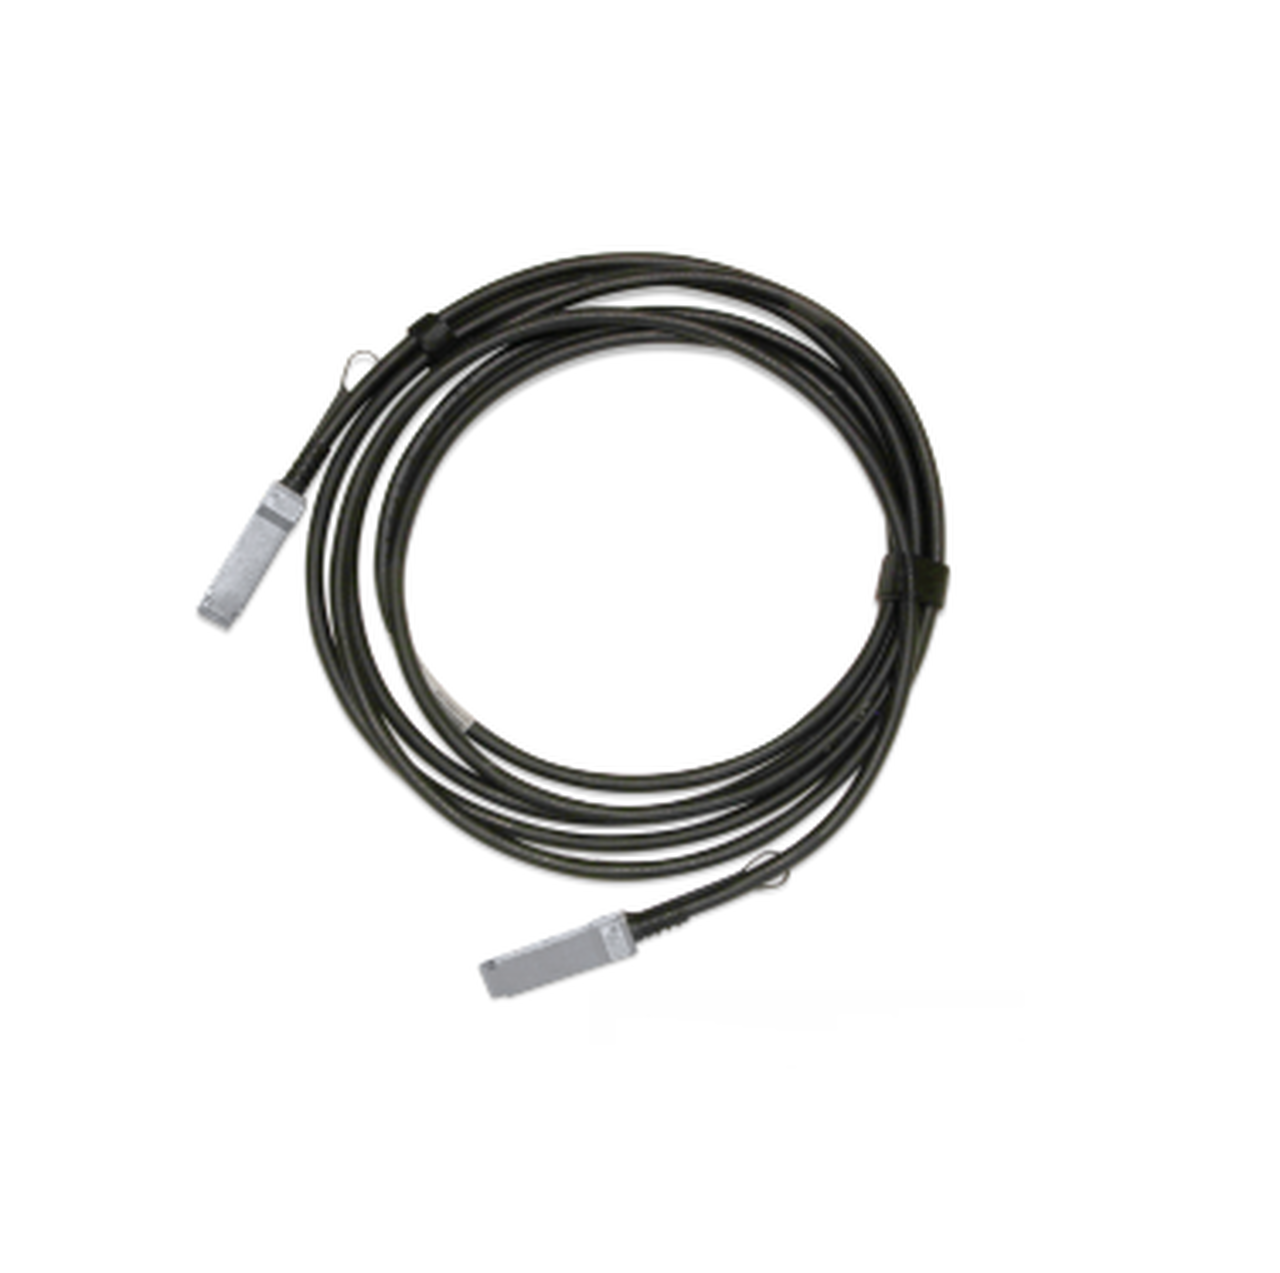 NVIDIA passive copper cable, ETH 100GbE, 100Gb/s, QSFP28, 3m